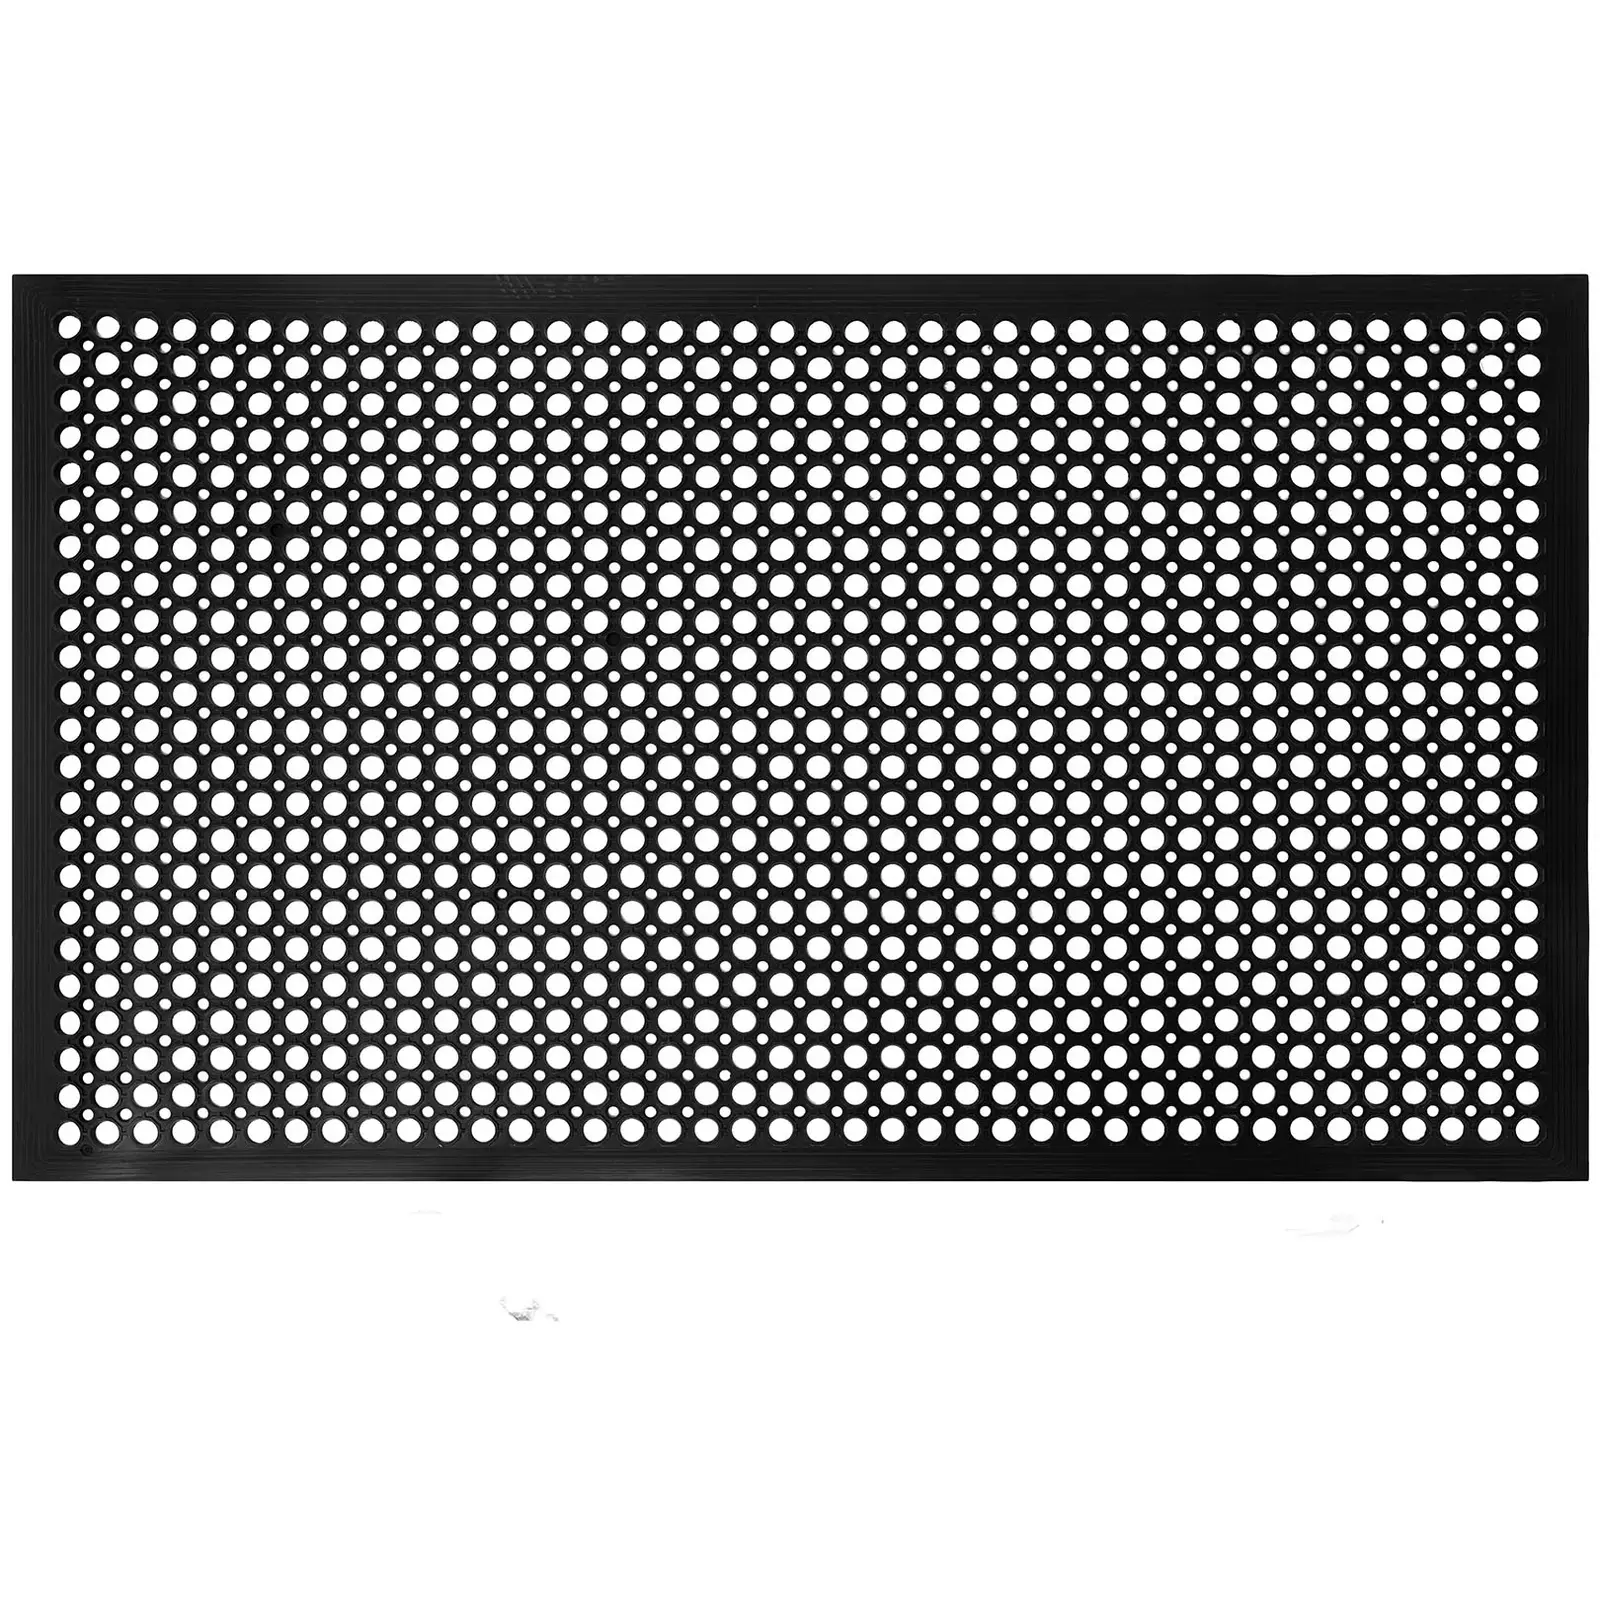 Ringgummimåtte - 152 x 92 x 2 cm - sort